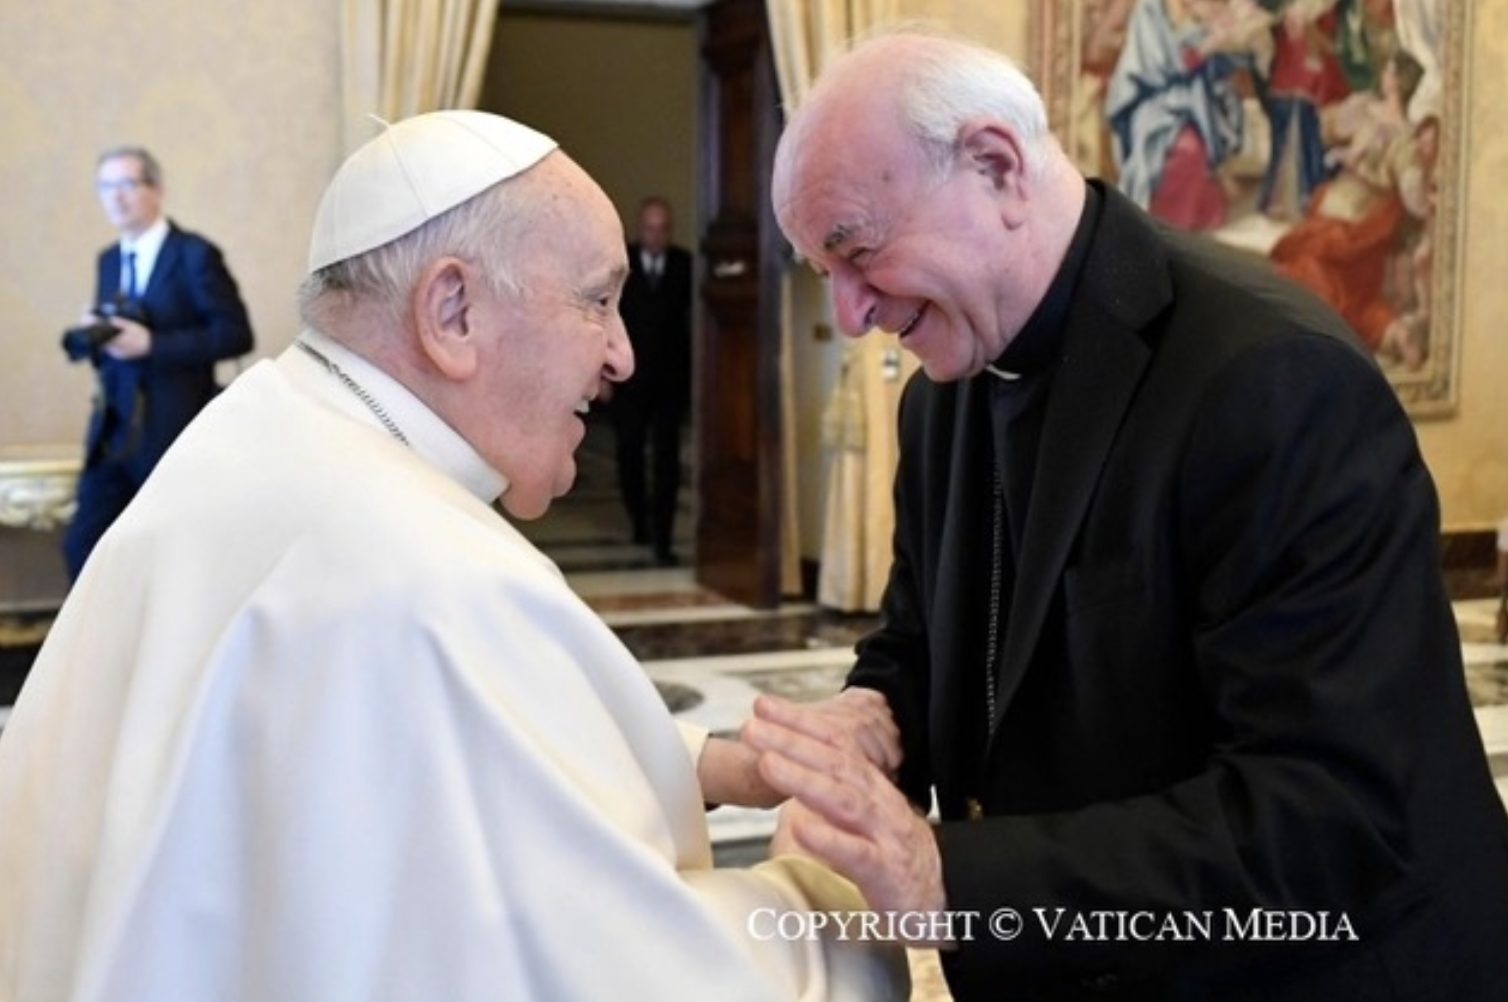 Le pape François avec Mgr Paglia, Président de l'Académie pontificale pour la vie © Vatican Media